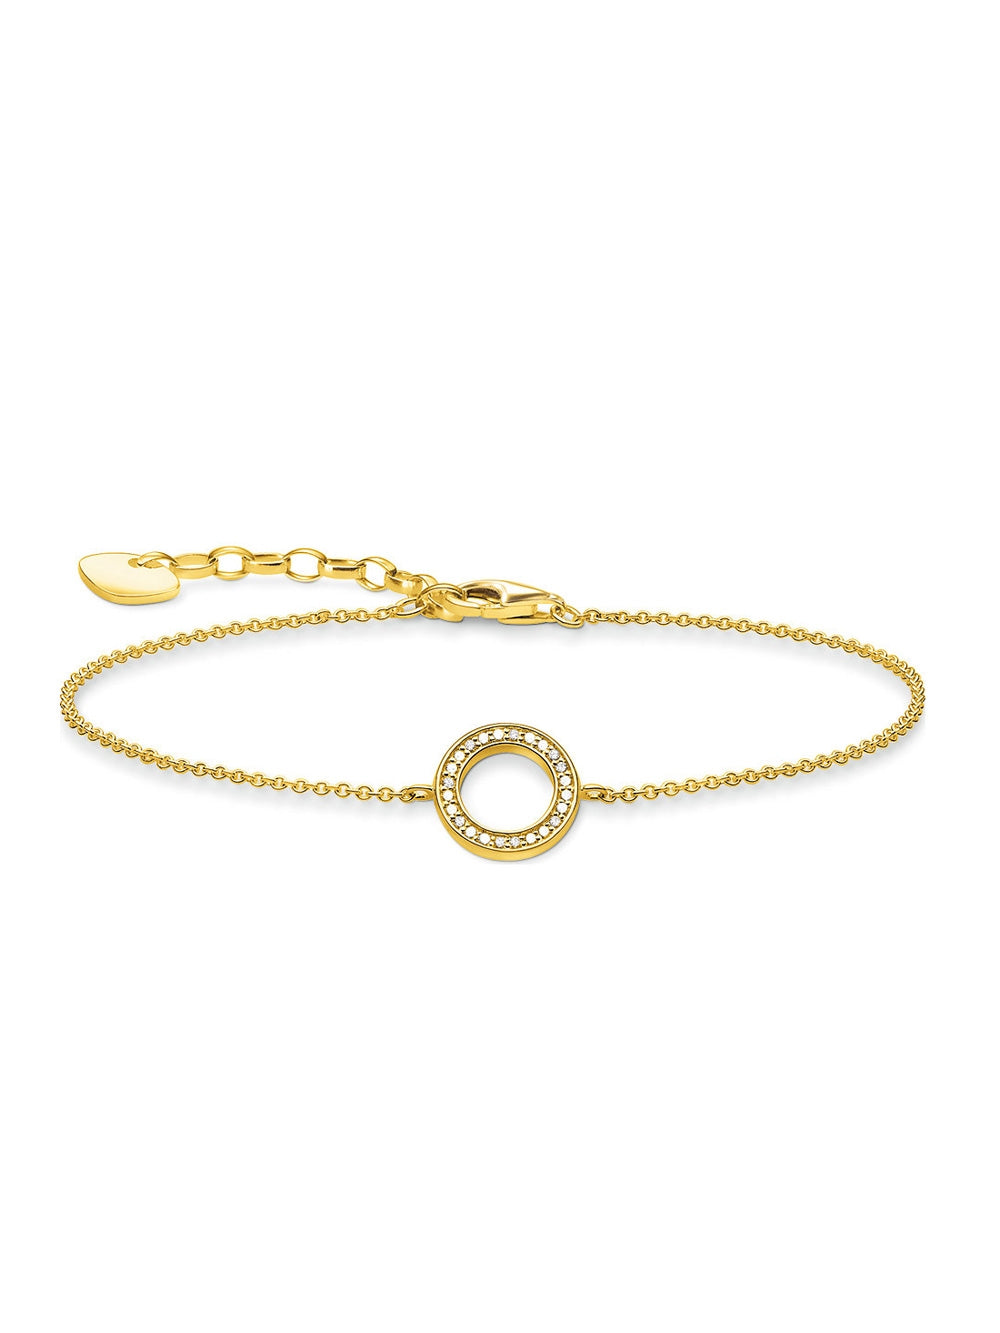 Thomas Sabo bracelet circle A1652-414-14 16-19cm